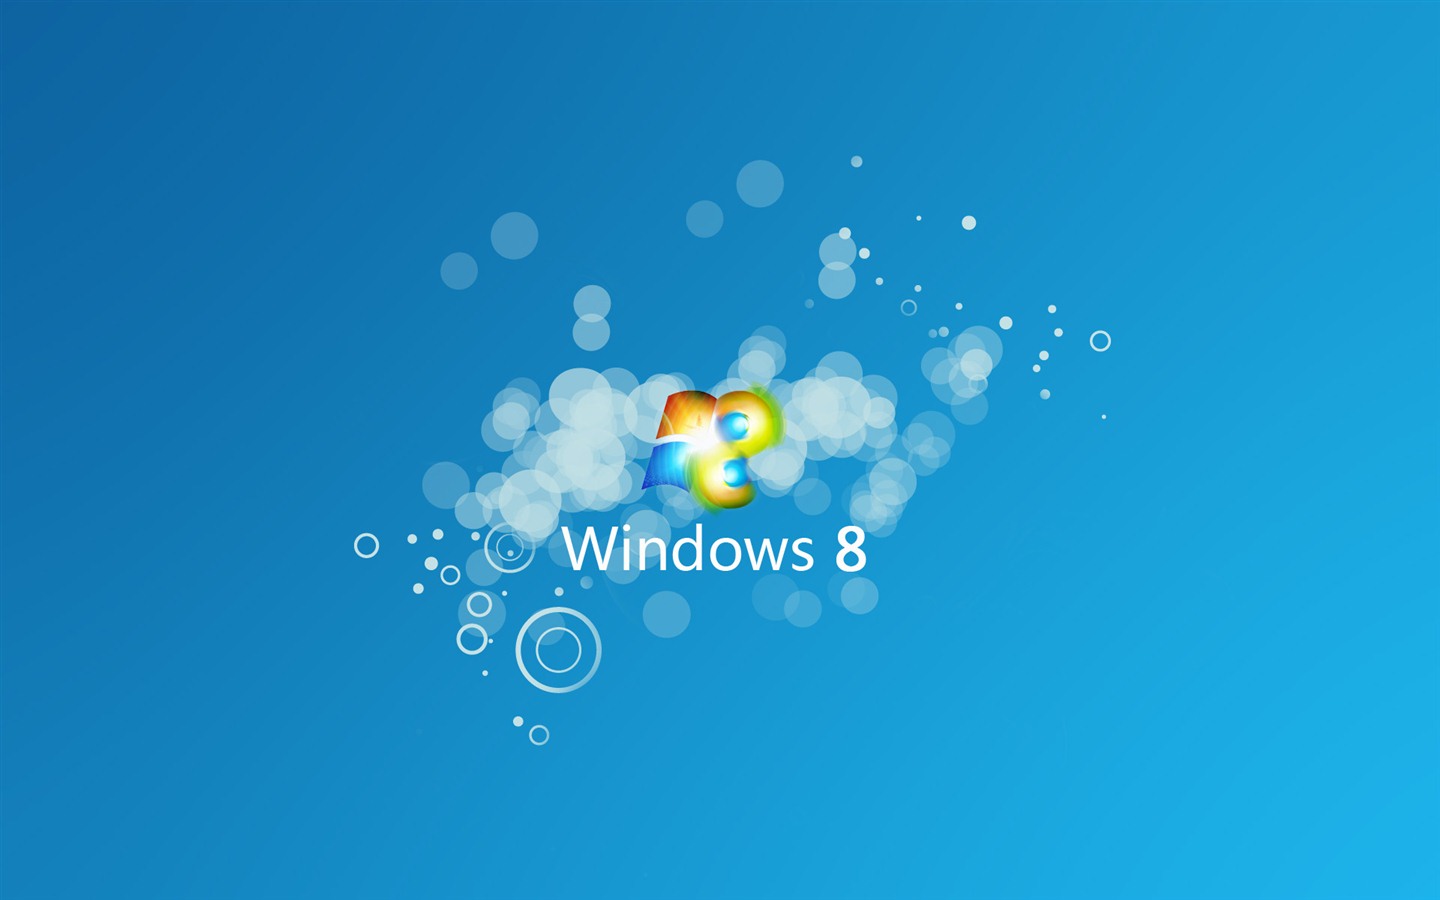 Windows 8 theme wallpaper (1) #9 - 1440x900